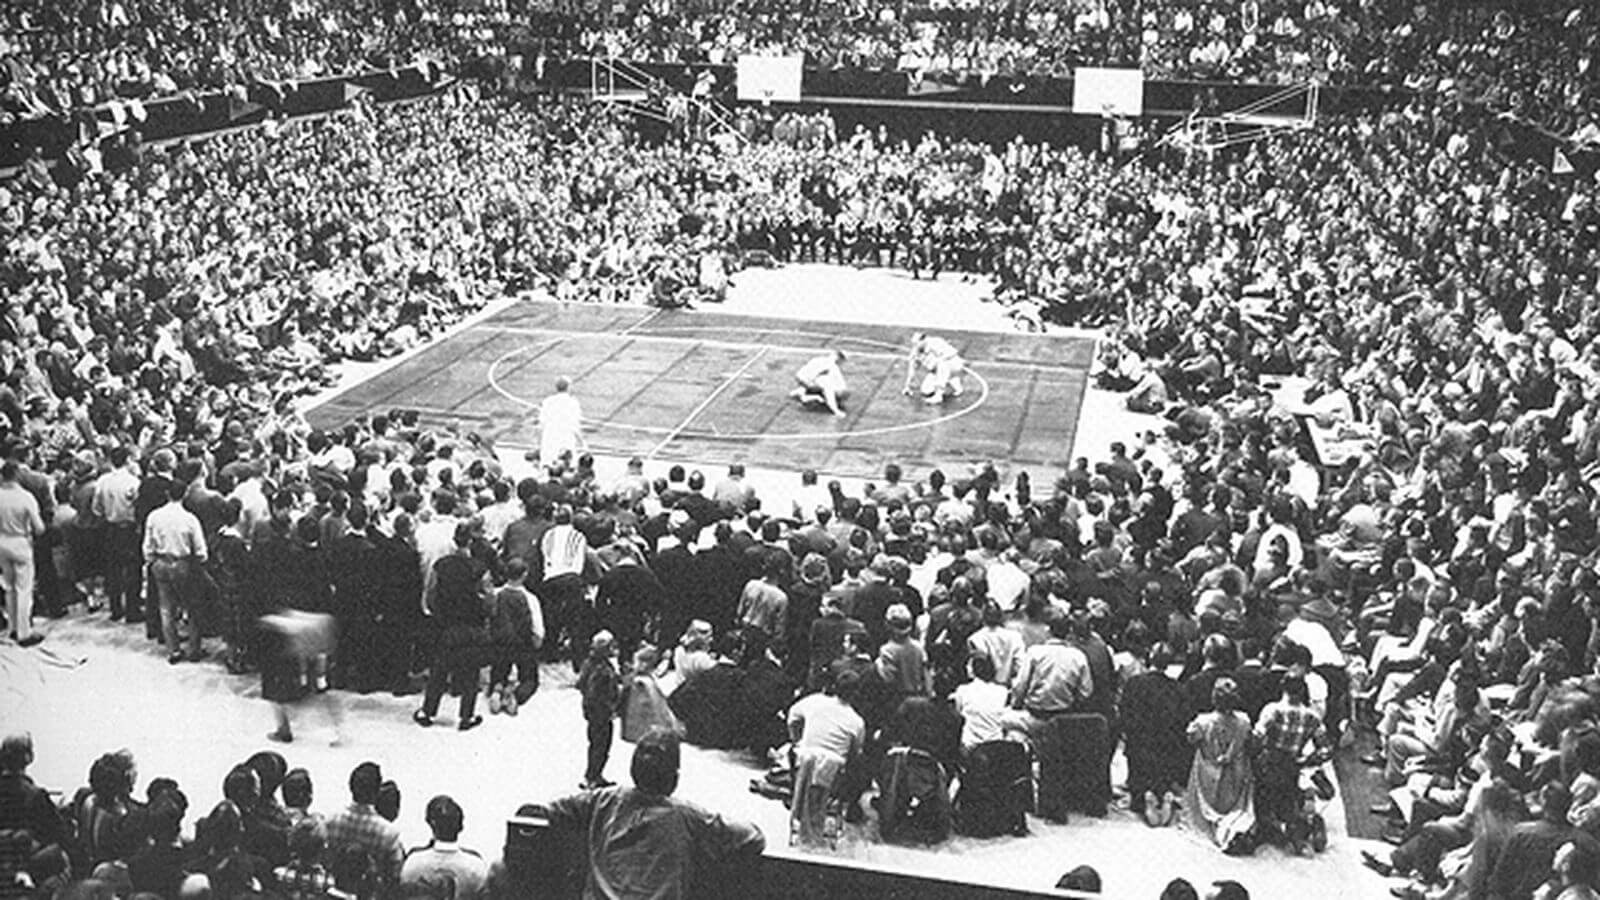 Tìm hiểu về bóng rổ – Lịch sử bóng rổ ở Mỹ